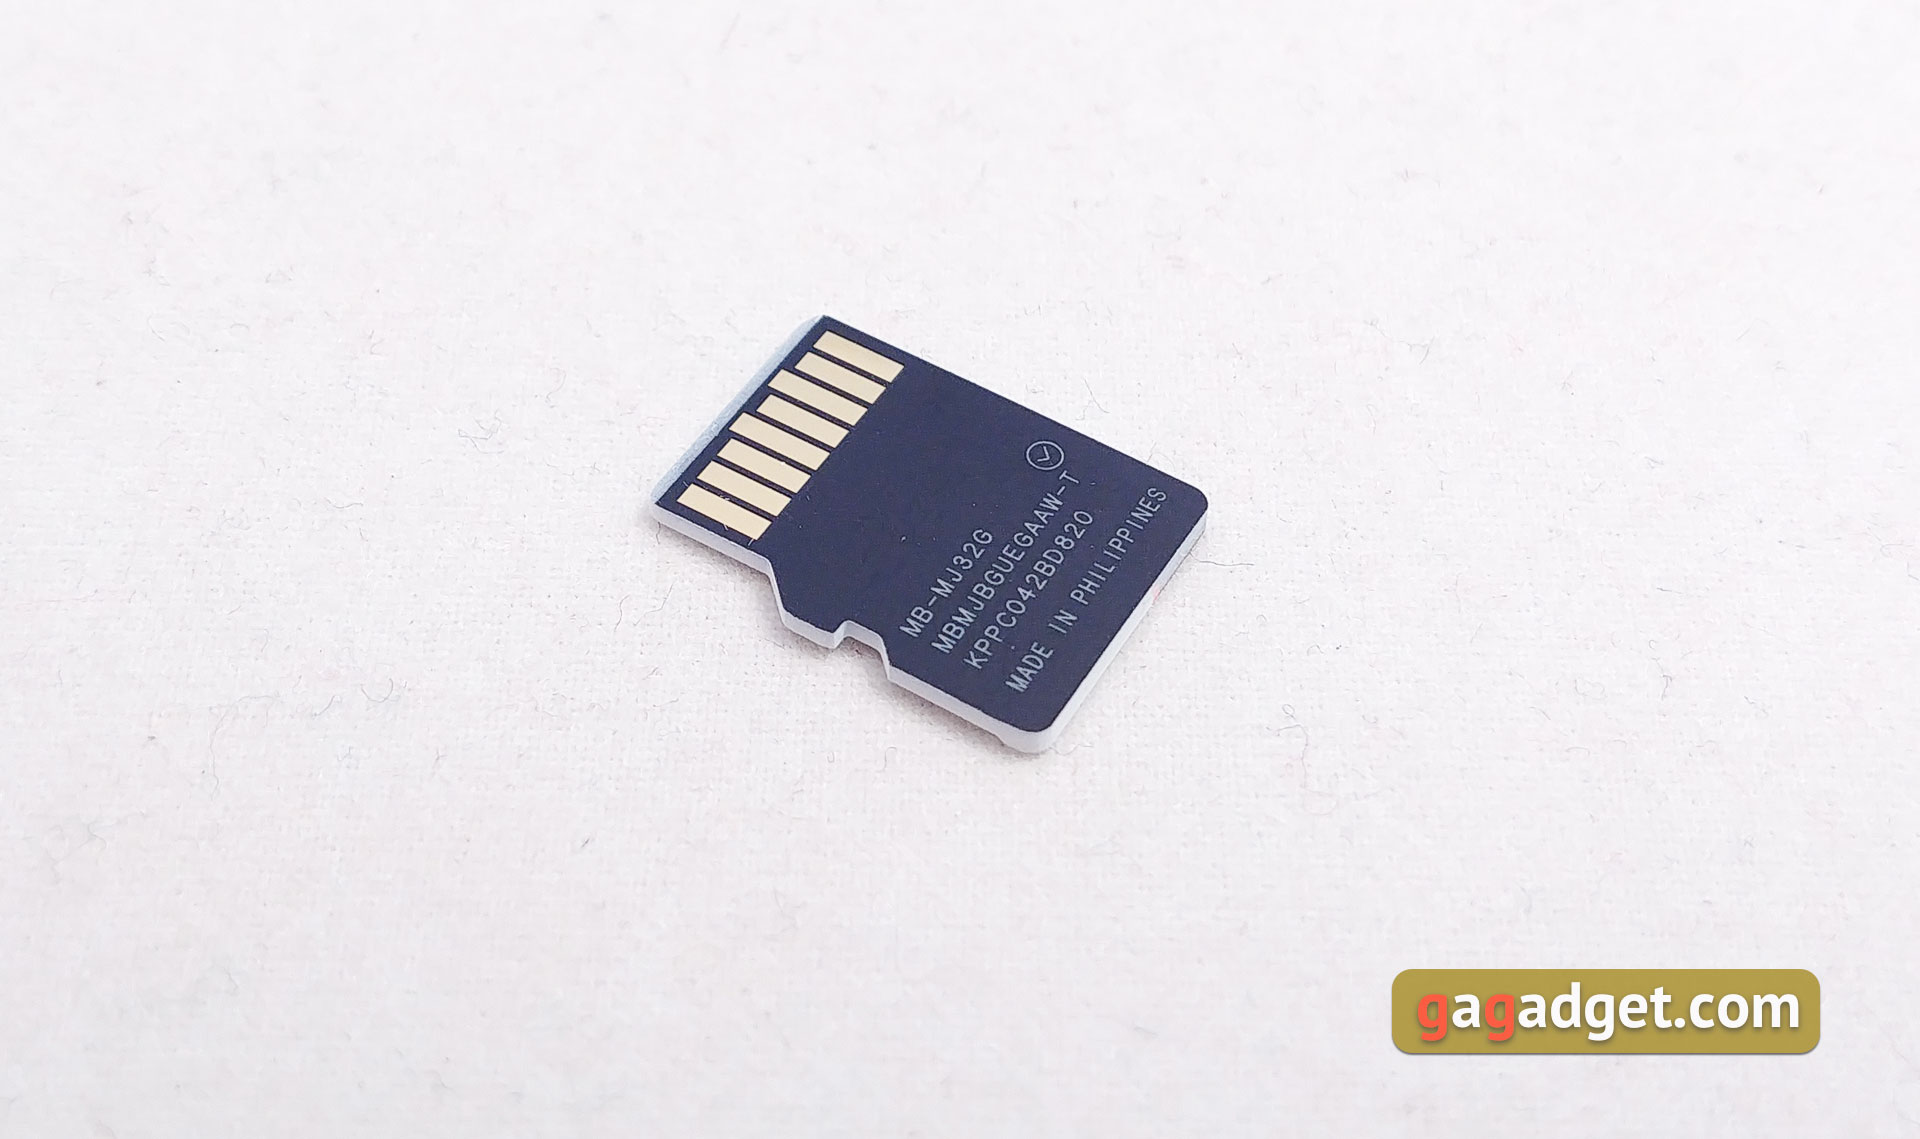 Обзор выносливых MicroSD Samsung PRO Endurance Card и USB-флешки Bar Plus-8